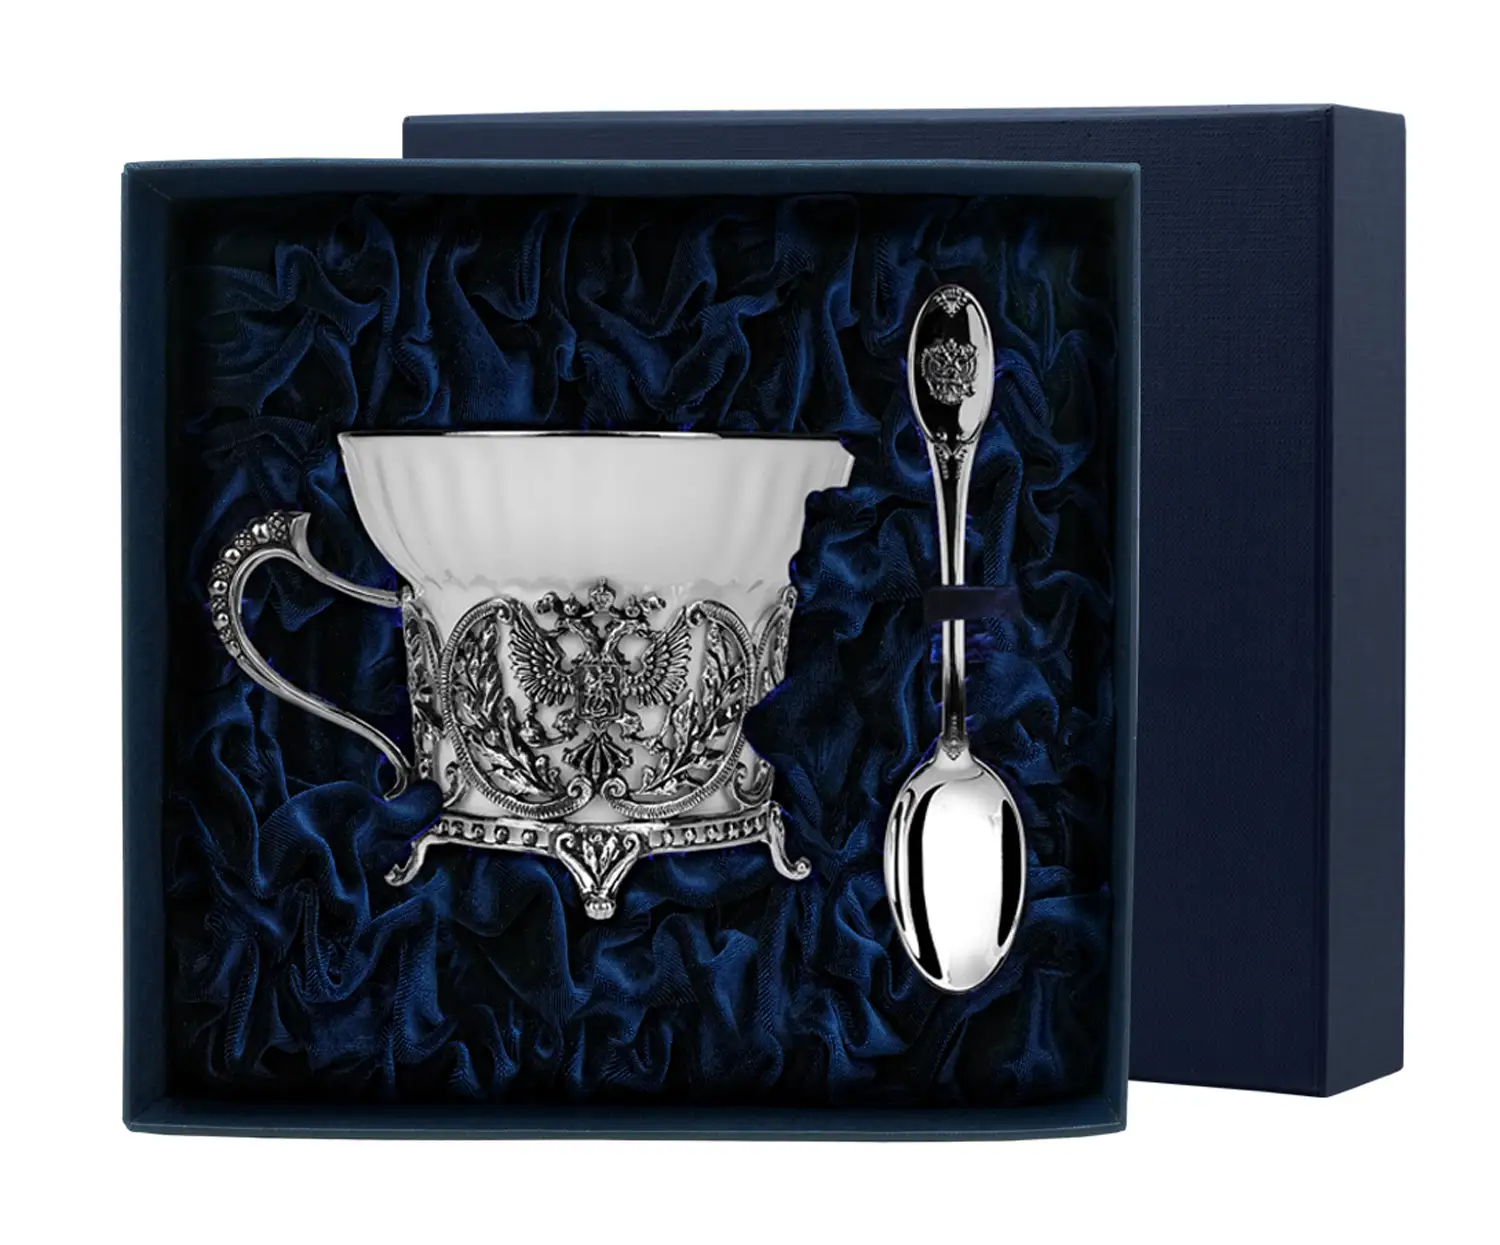 Набор чайная чашка Герб: ложка, чашка (Серебро 925) набор чайная чашка королевская охота ложка чашка серебро 925